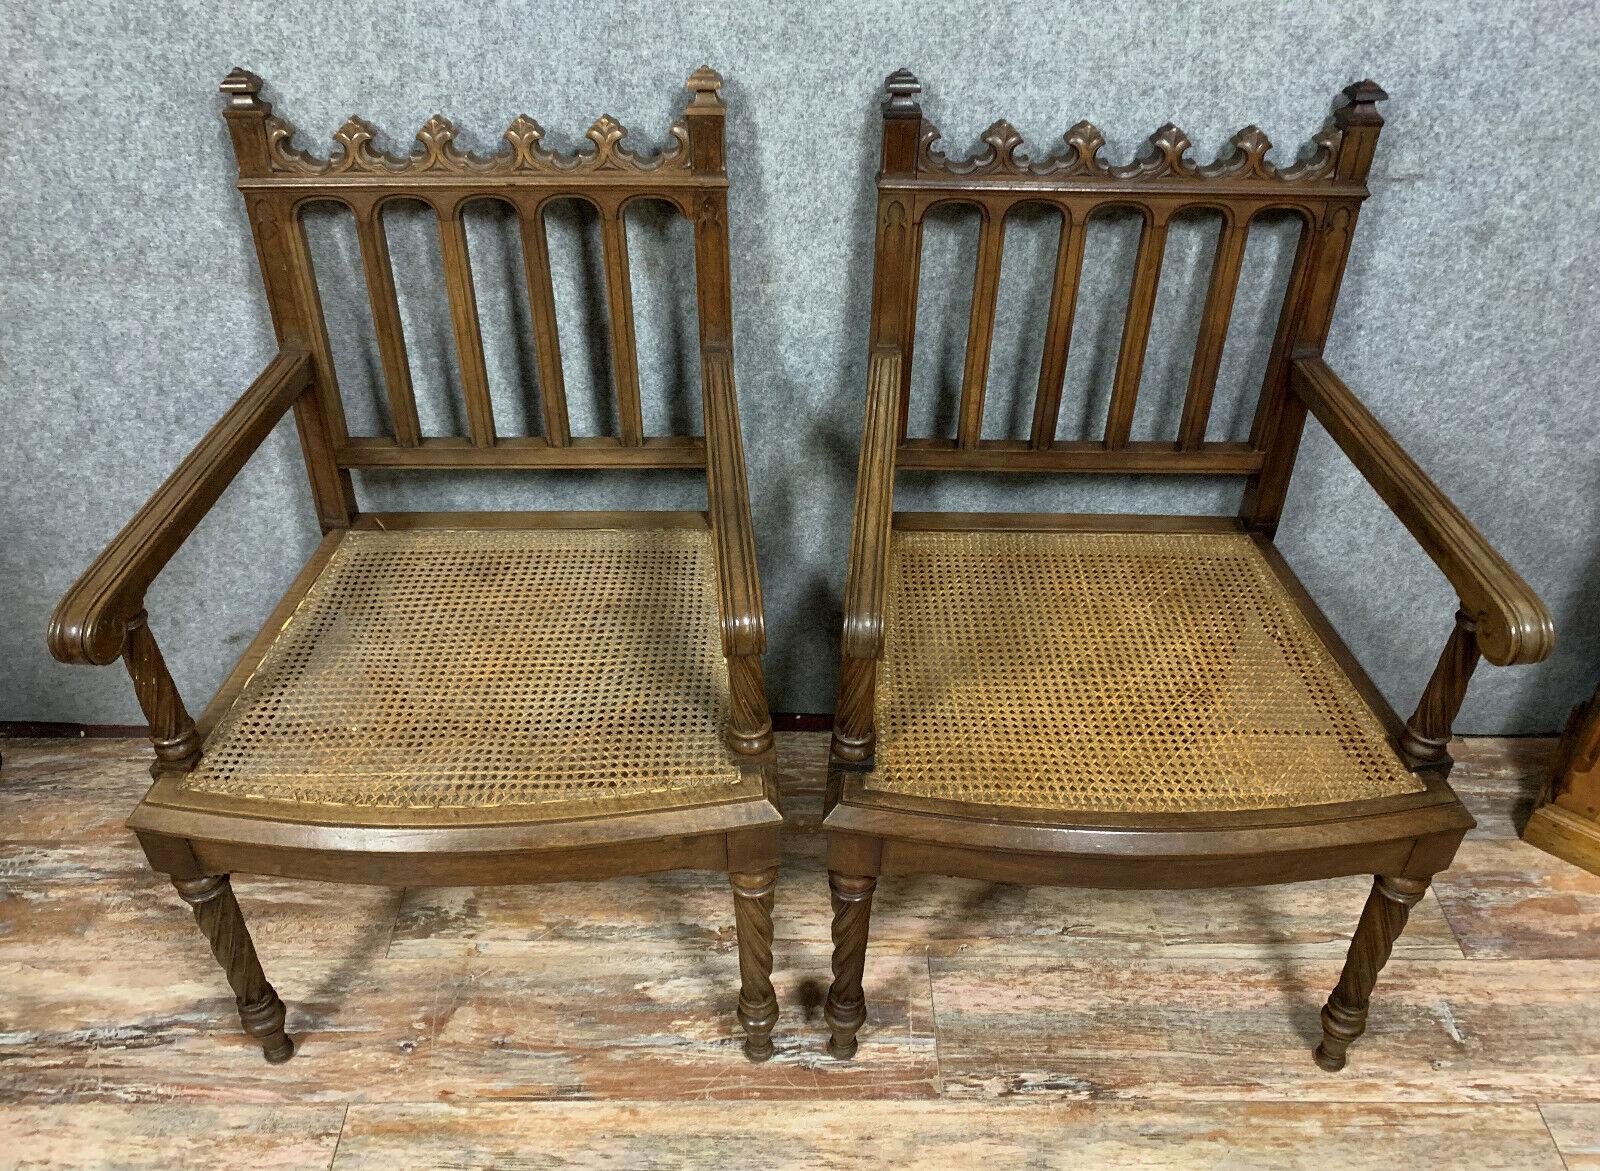 Dieses exquisite Paar Sessel aus gotischem Nussbaumholz, das um 1850 hergestellt wurde, wertet Ihre Inneneinrichtung auf. Inspiriert von den architektonischen Elementen des Mittelalters, zeichnen sich diese beeindruckenden Sessel durch zeitlose